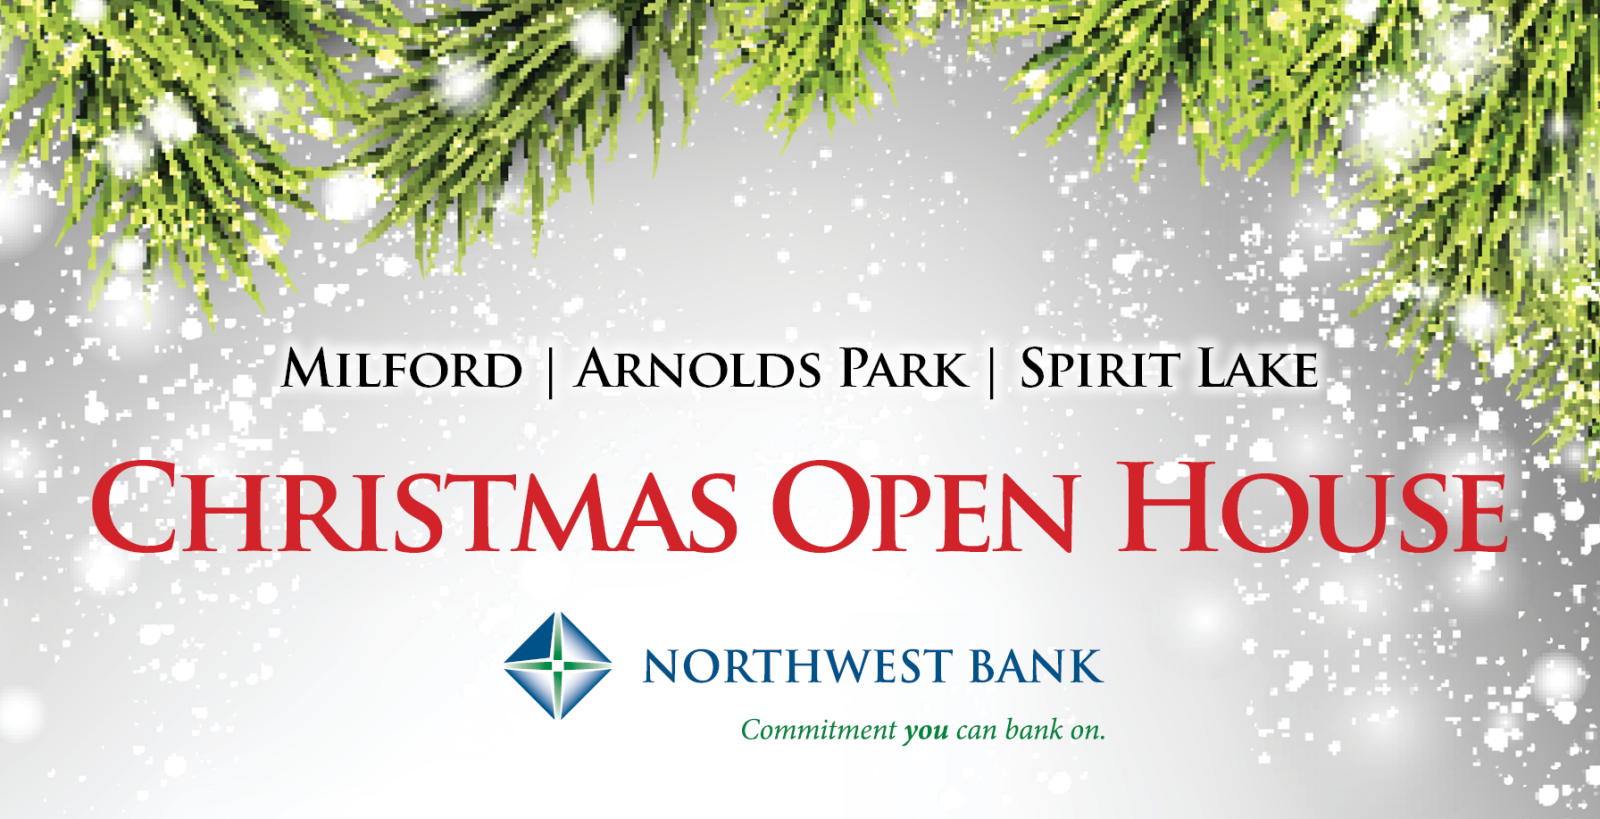 Milford, Arnolds Park, Spirit Lake Christmas Open House